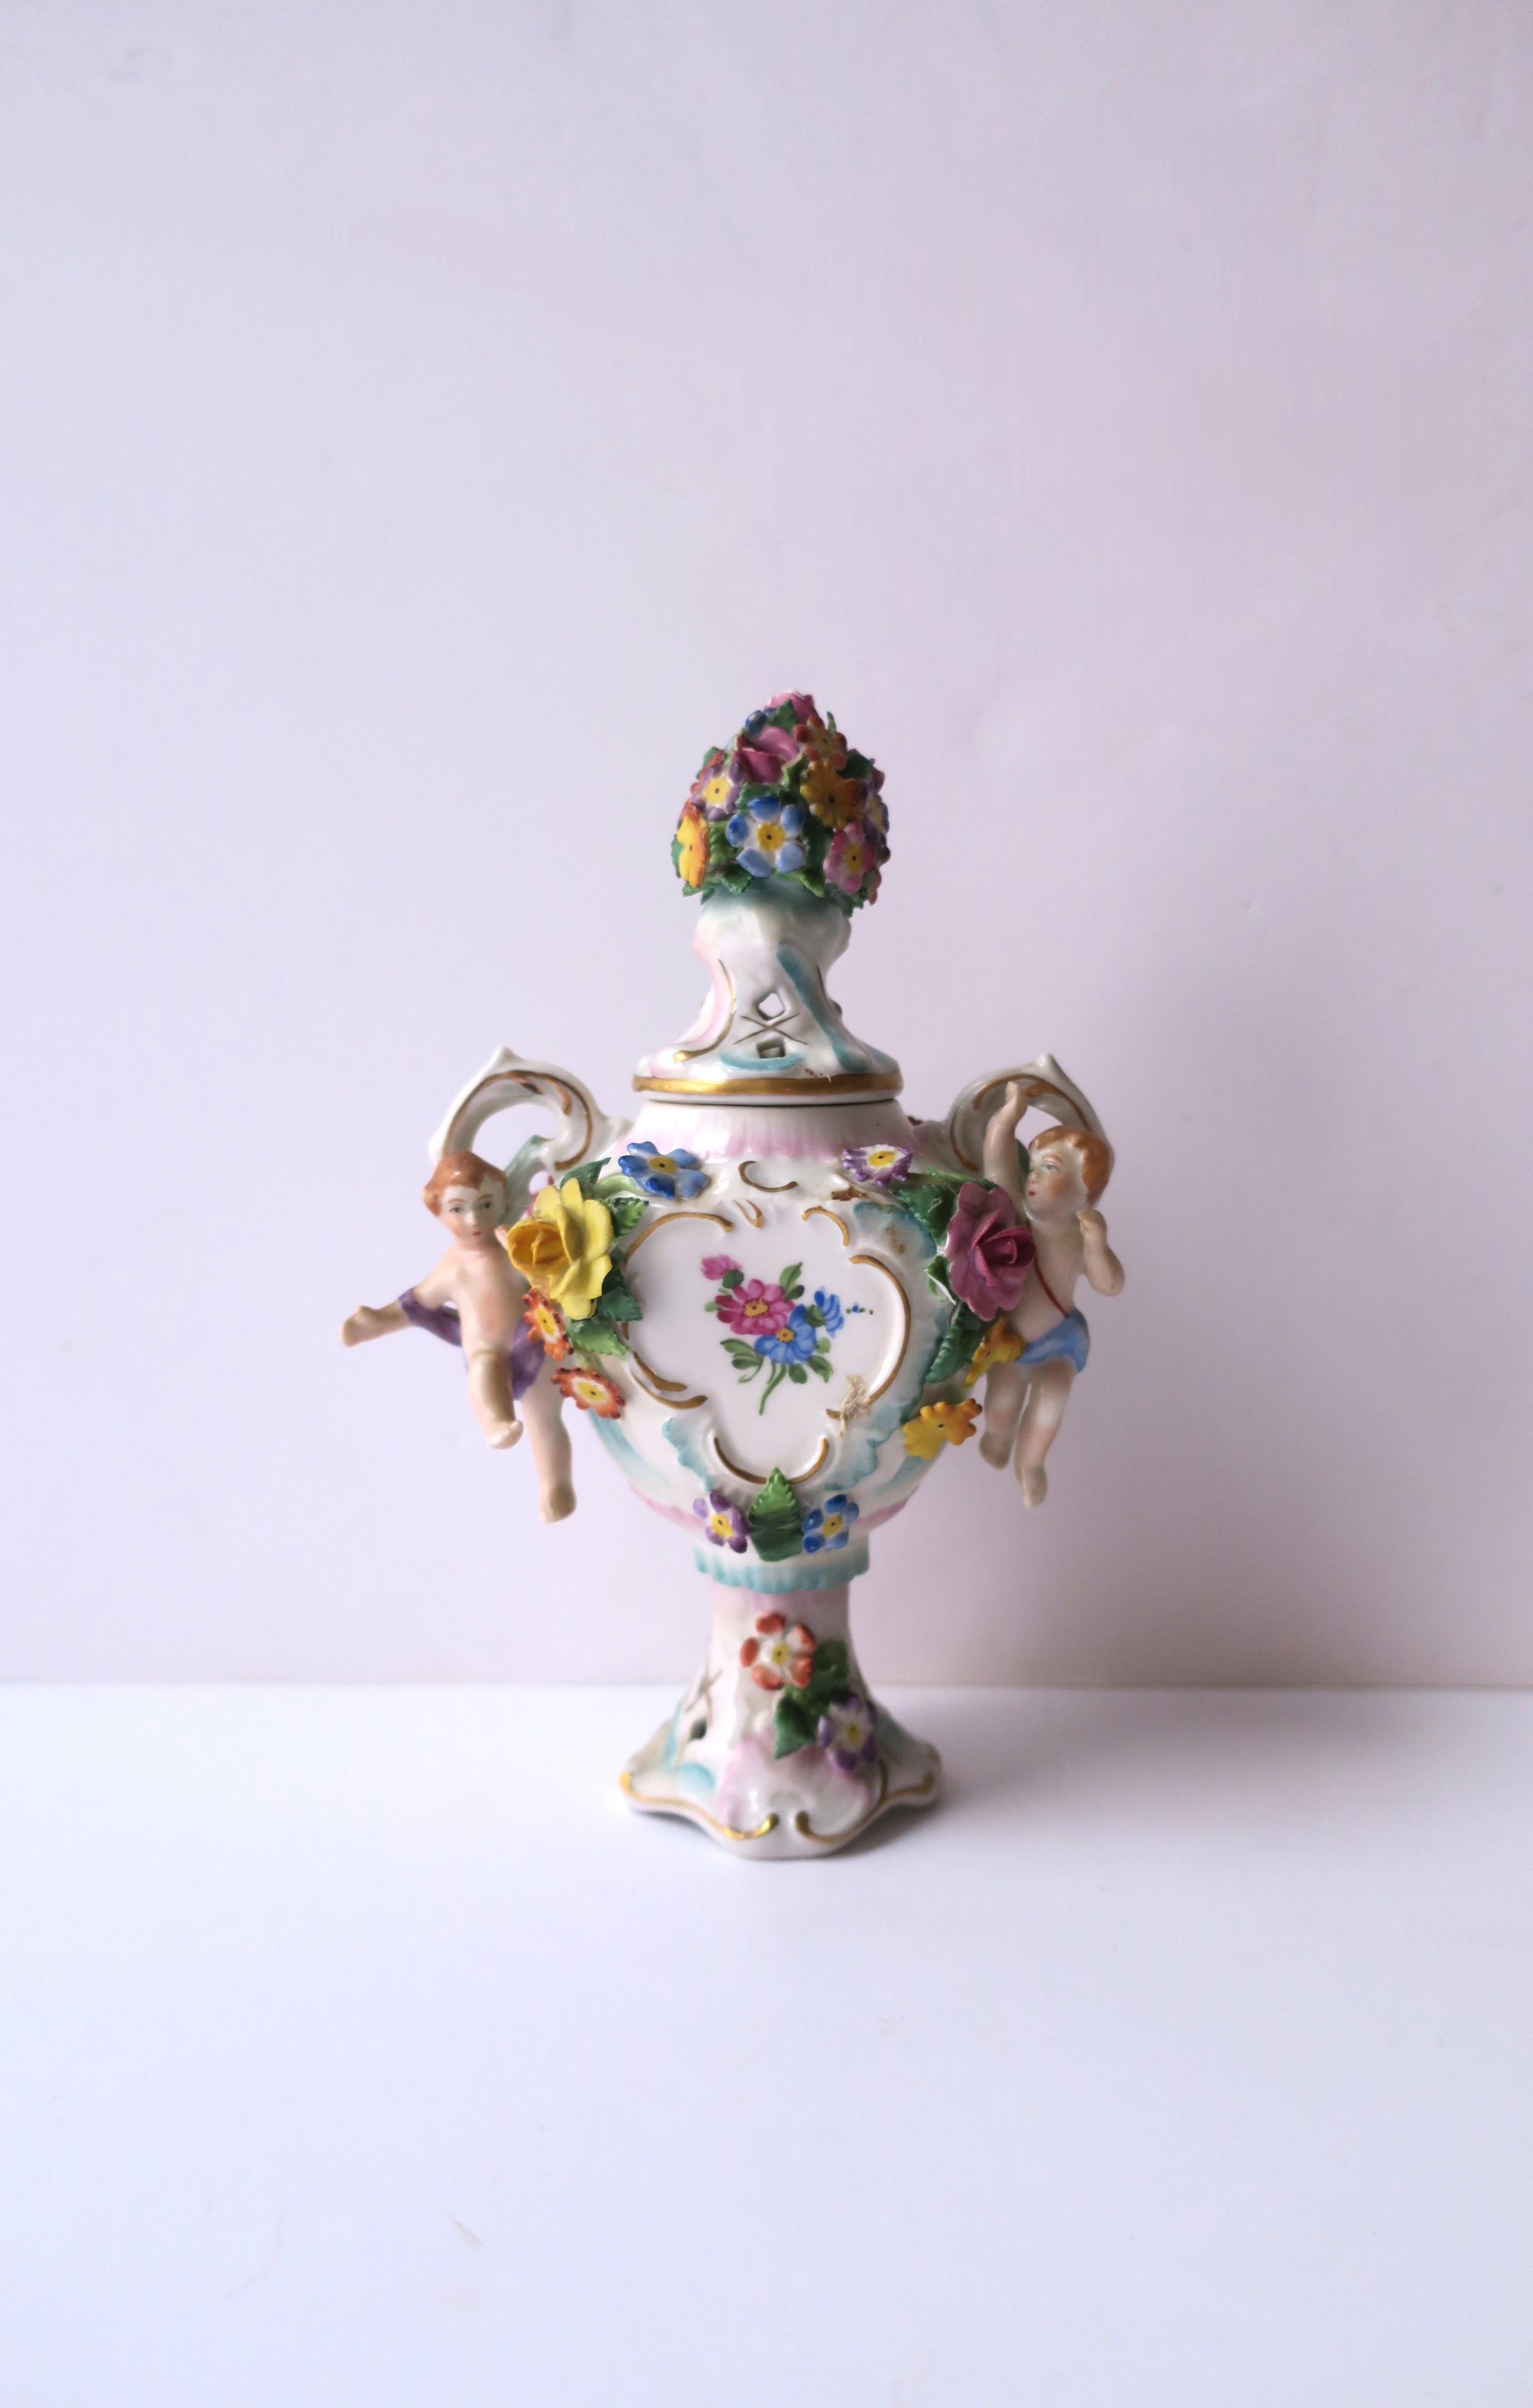 Magnifique vase urne en porcelaine peinte à la main avec des fleurs et des putti, dans le style Rocco, par Sitzendorf, vers le 19e siècle ou plus tôt, Allemagne. La pièce comporte un couvercle floral, des putti et des fleurs sur les côtés gauche et